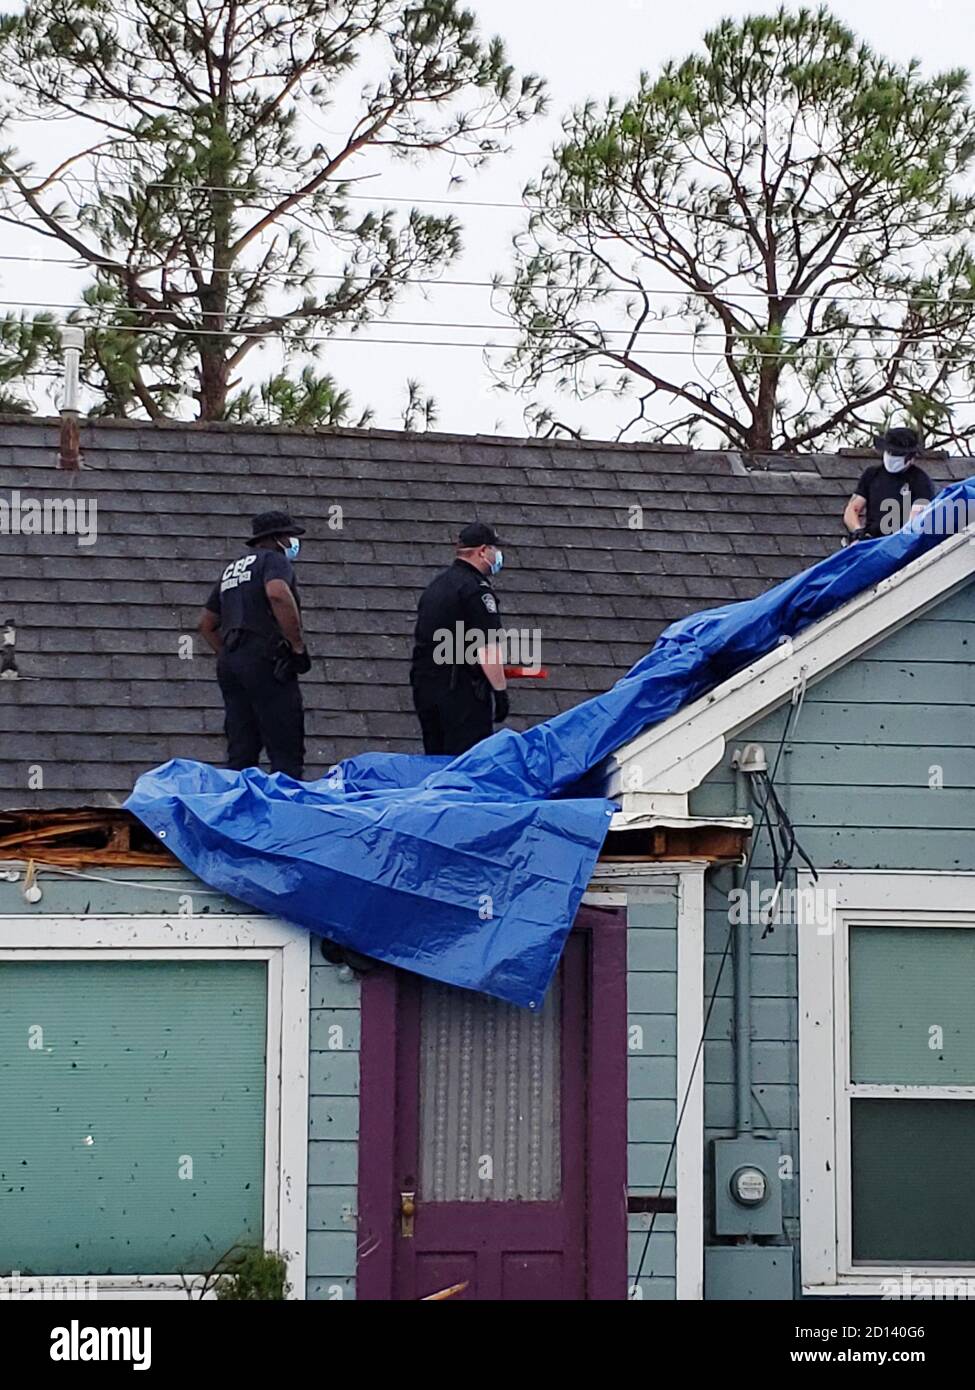 Los oficiales del CBP aplican un tarp al techo de una casa de Lake Charles, LA que había sido severamente dañado por el huracán Laura, que golpeó el suroeste de Luisiana el 26 de agosto de 2020. Foto de stock